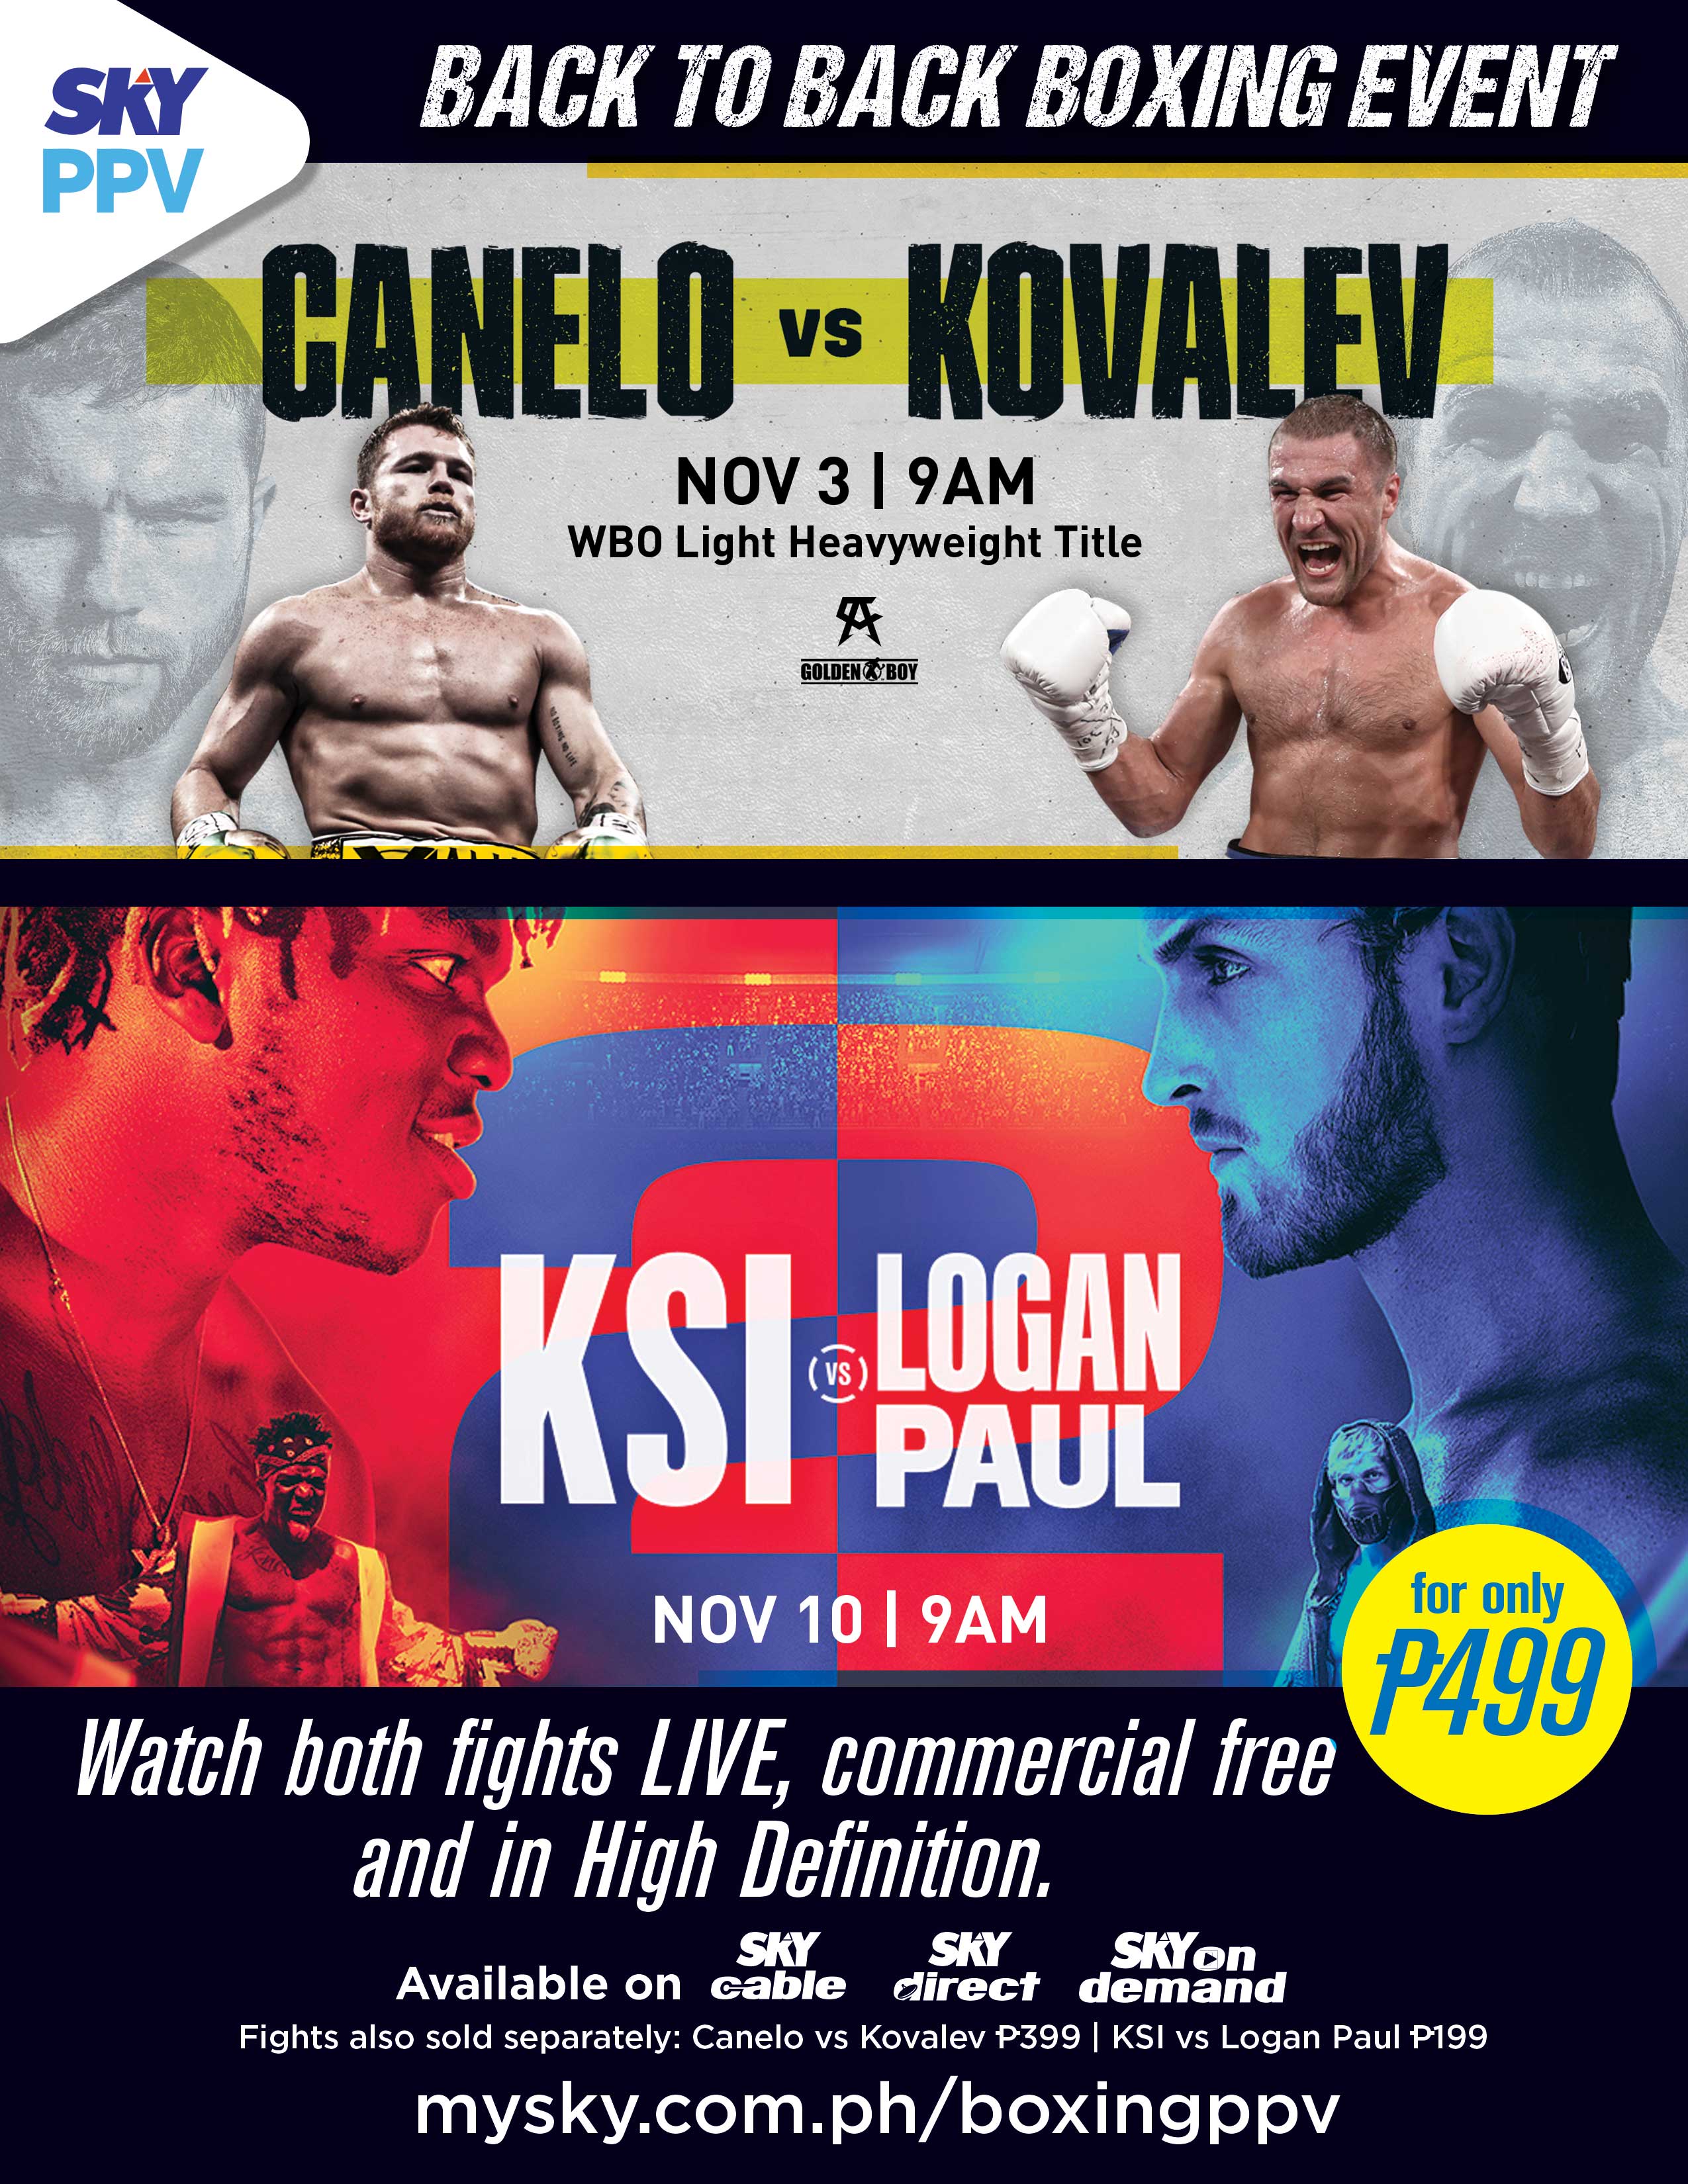 Canelo-Kovalev, KSI-Logan Paul boxing bouts heat up SKY Sports PPV